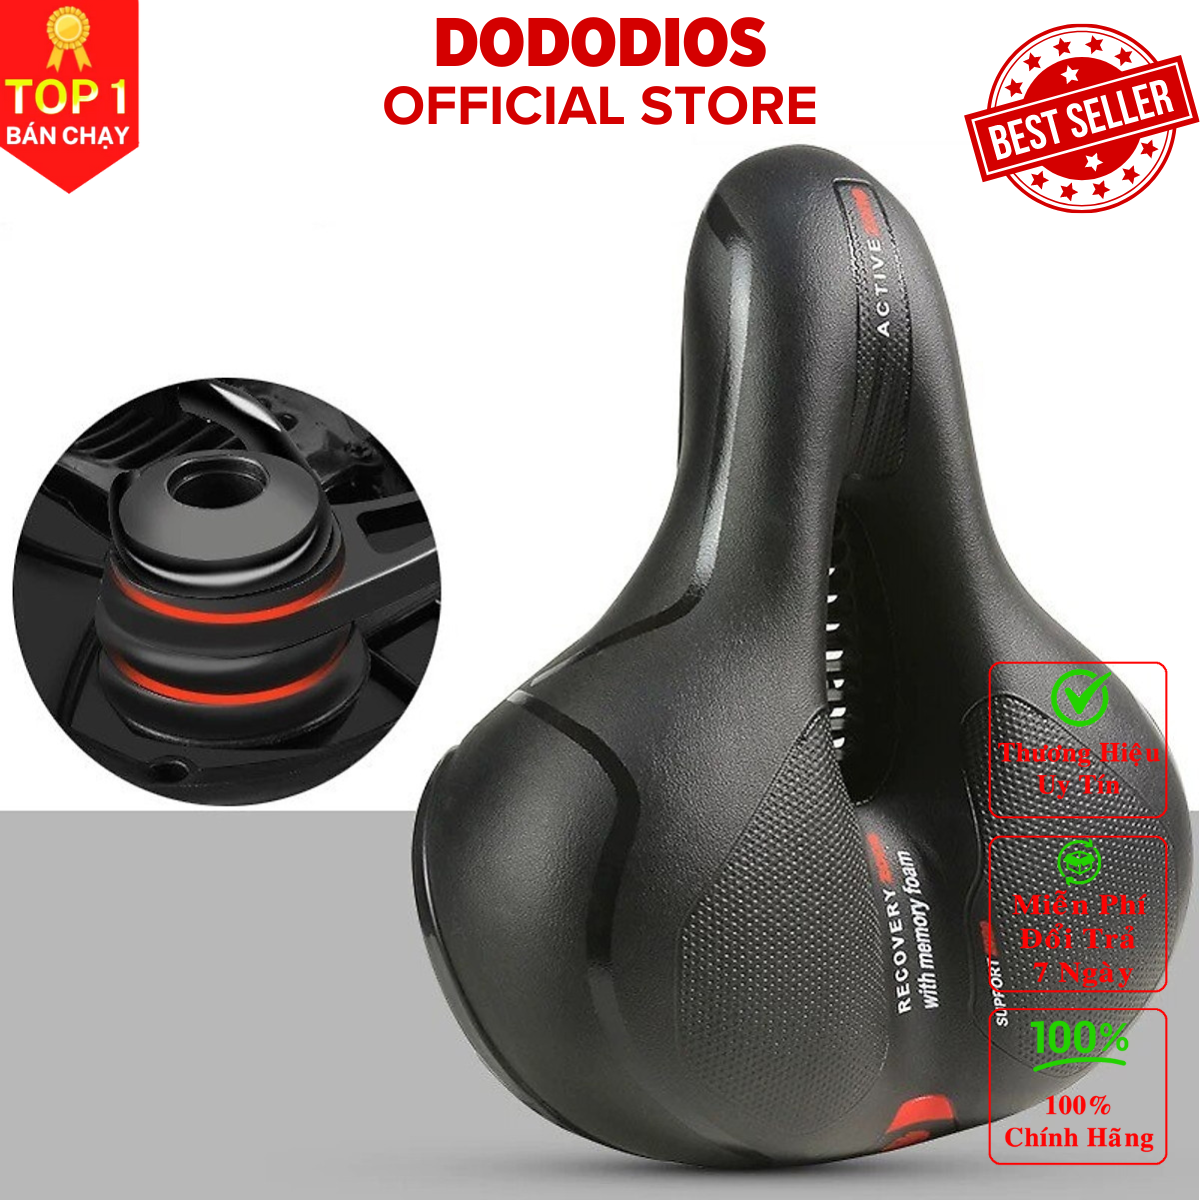 [Chính hãng] yên xe đạp thể thao êm ái thoáng khí dễ lắp đặt - Đệm Yên xe địa hình thể thao chuyên dụng Thương hiệu DoDoDios